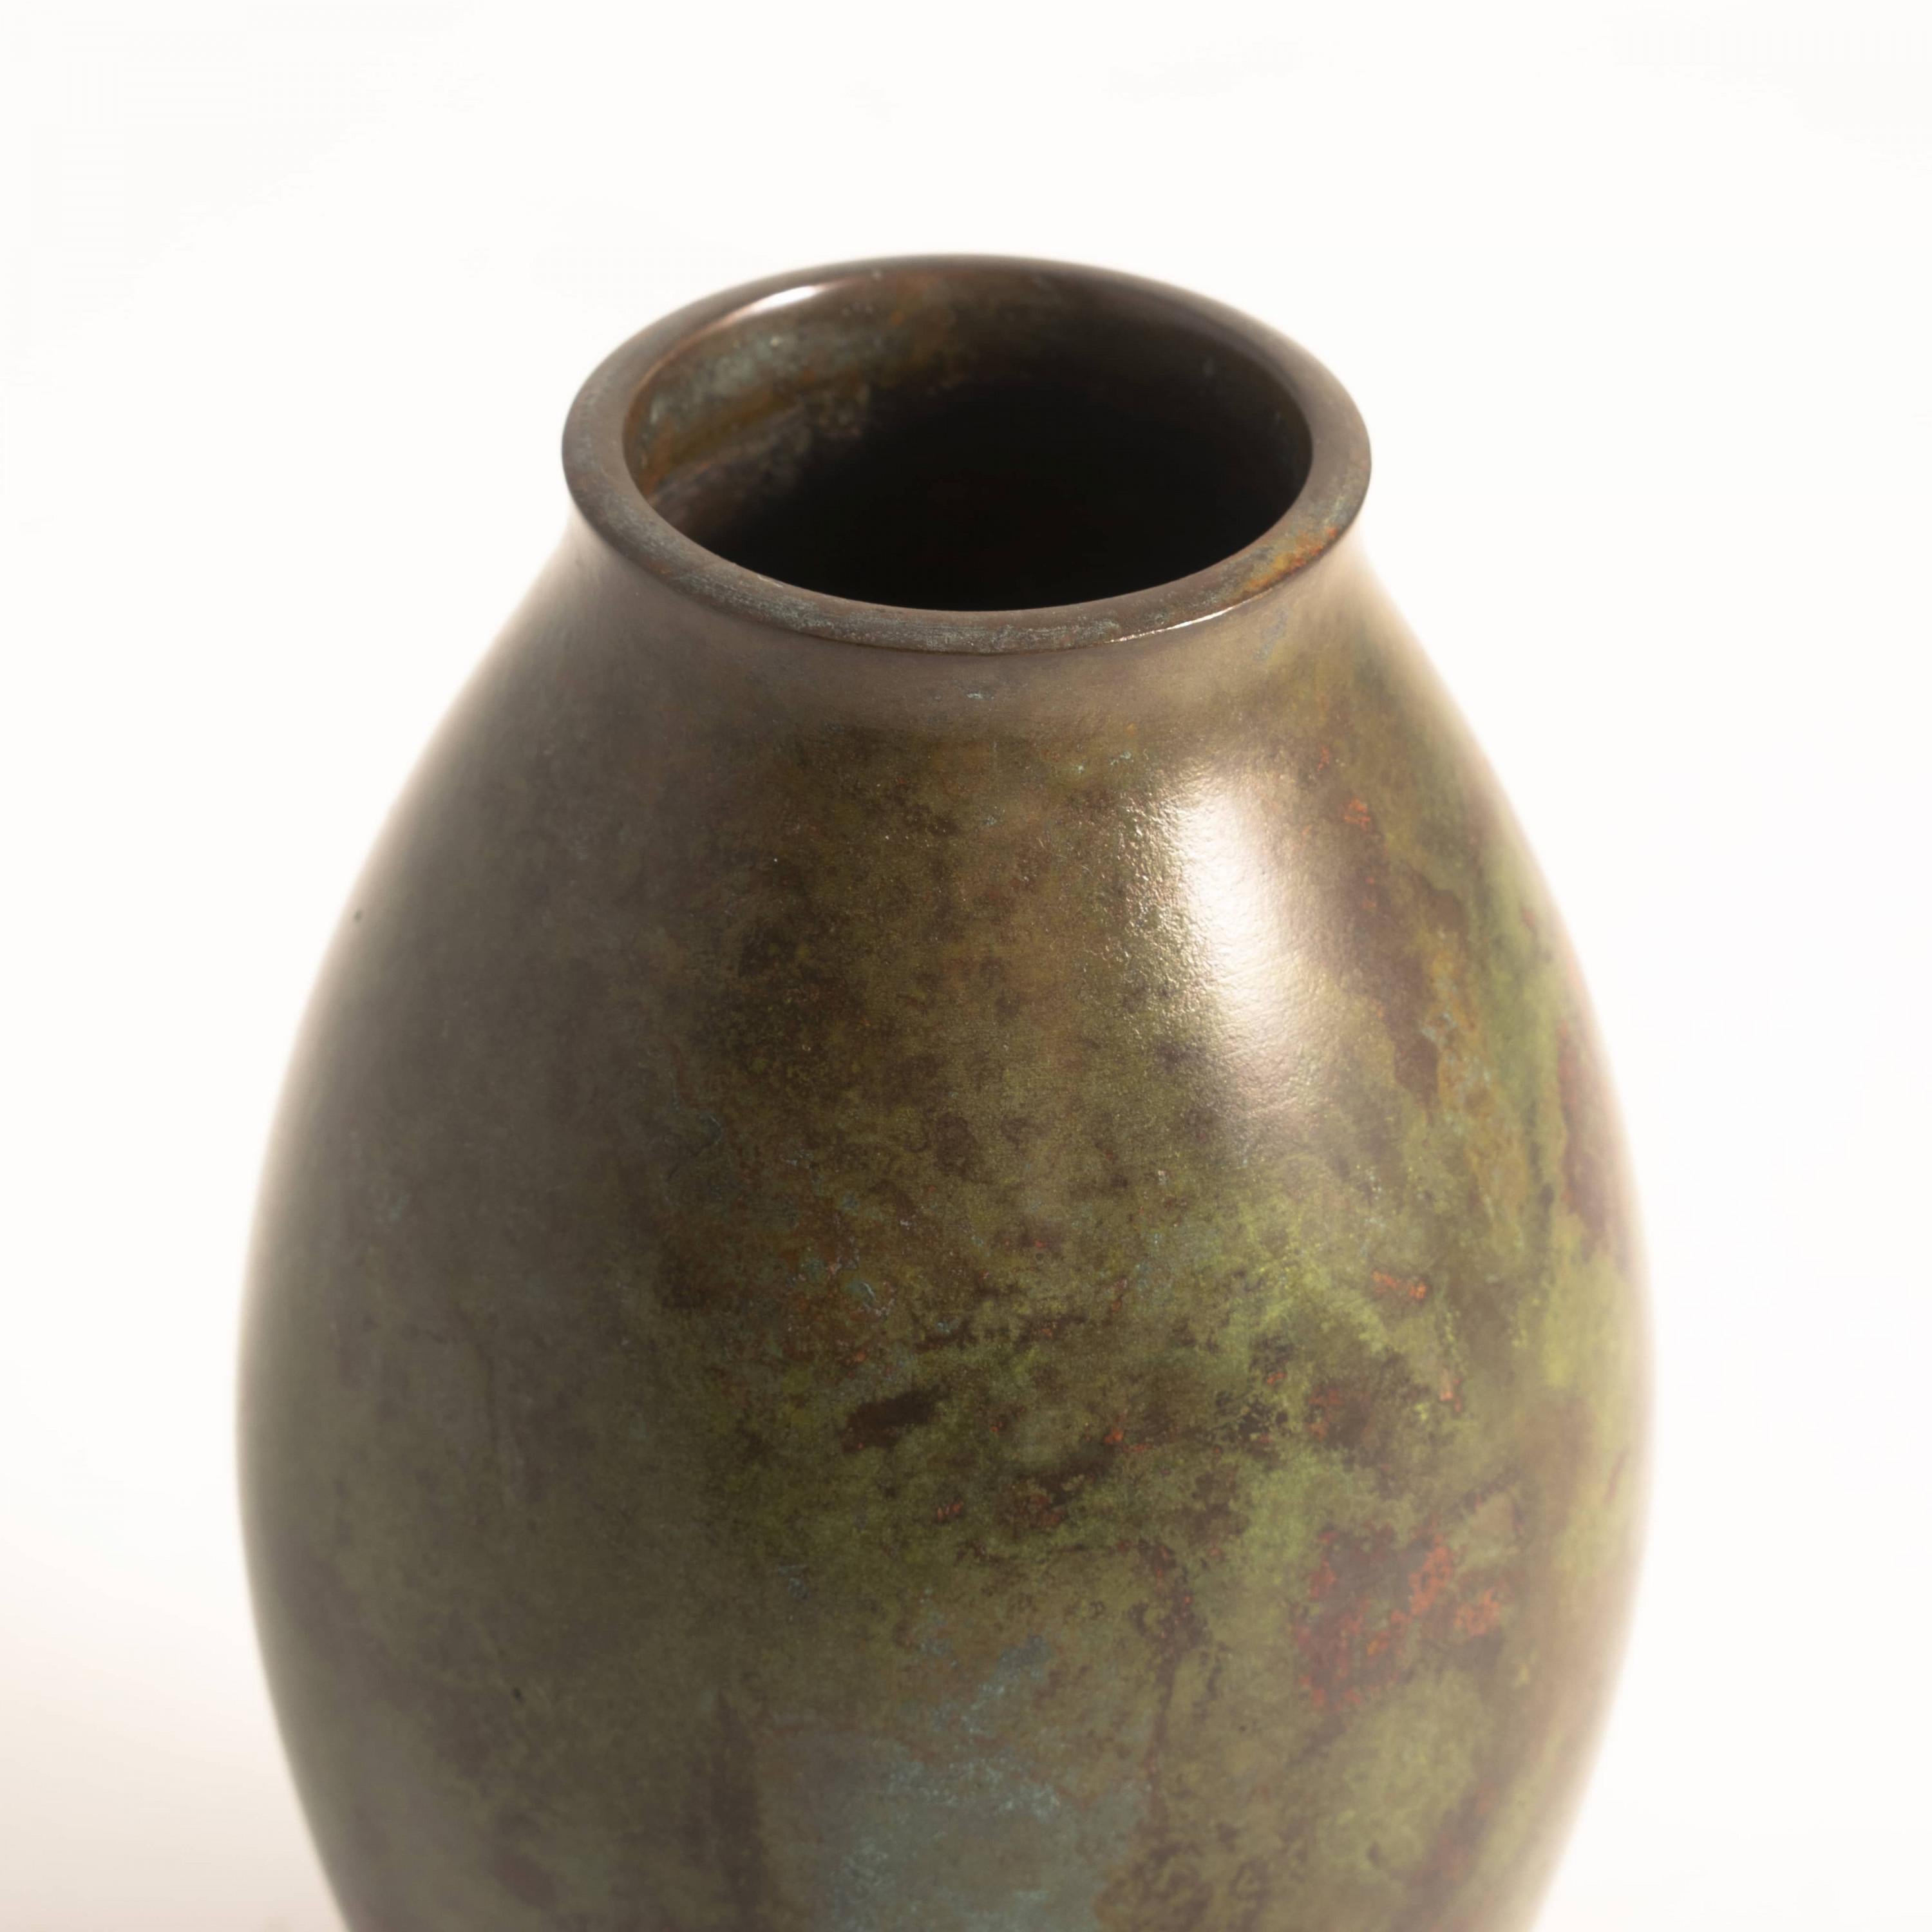 Hasegawa Gasen 1928 - 2002.
Vase japonais en bronze.
Magnifique patine dans les tons verts / brunâtres.
Sceau marqué.